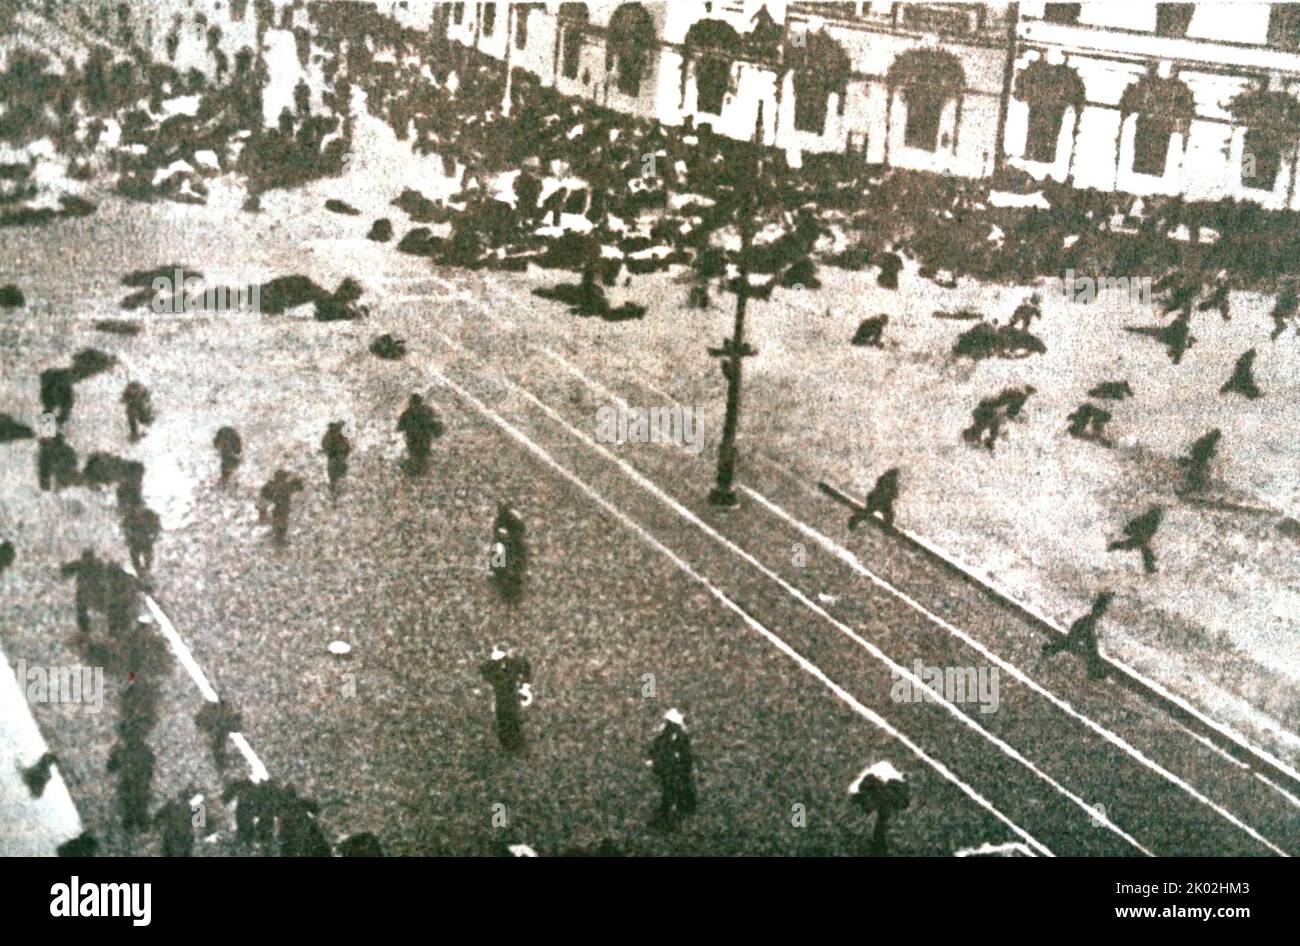 Le tournage d'une manifestation pacifique à Petrograd sur 4 juillet 1917. Les jours de juillet ont changé la situation dans le pays. Maintenant, avec le transfert de tout pouvoir entre les mains de la contre-révolution, la classe ouvrière ne pouvait prendre le pouvoir que par l'insurrection armée. Banque D'Images